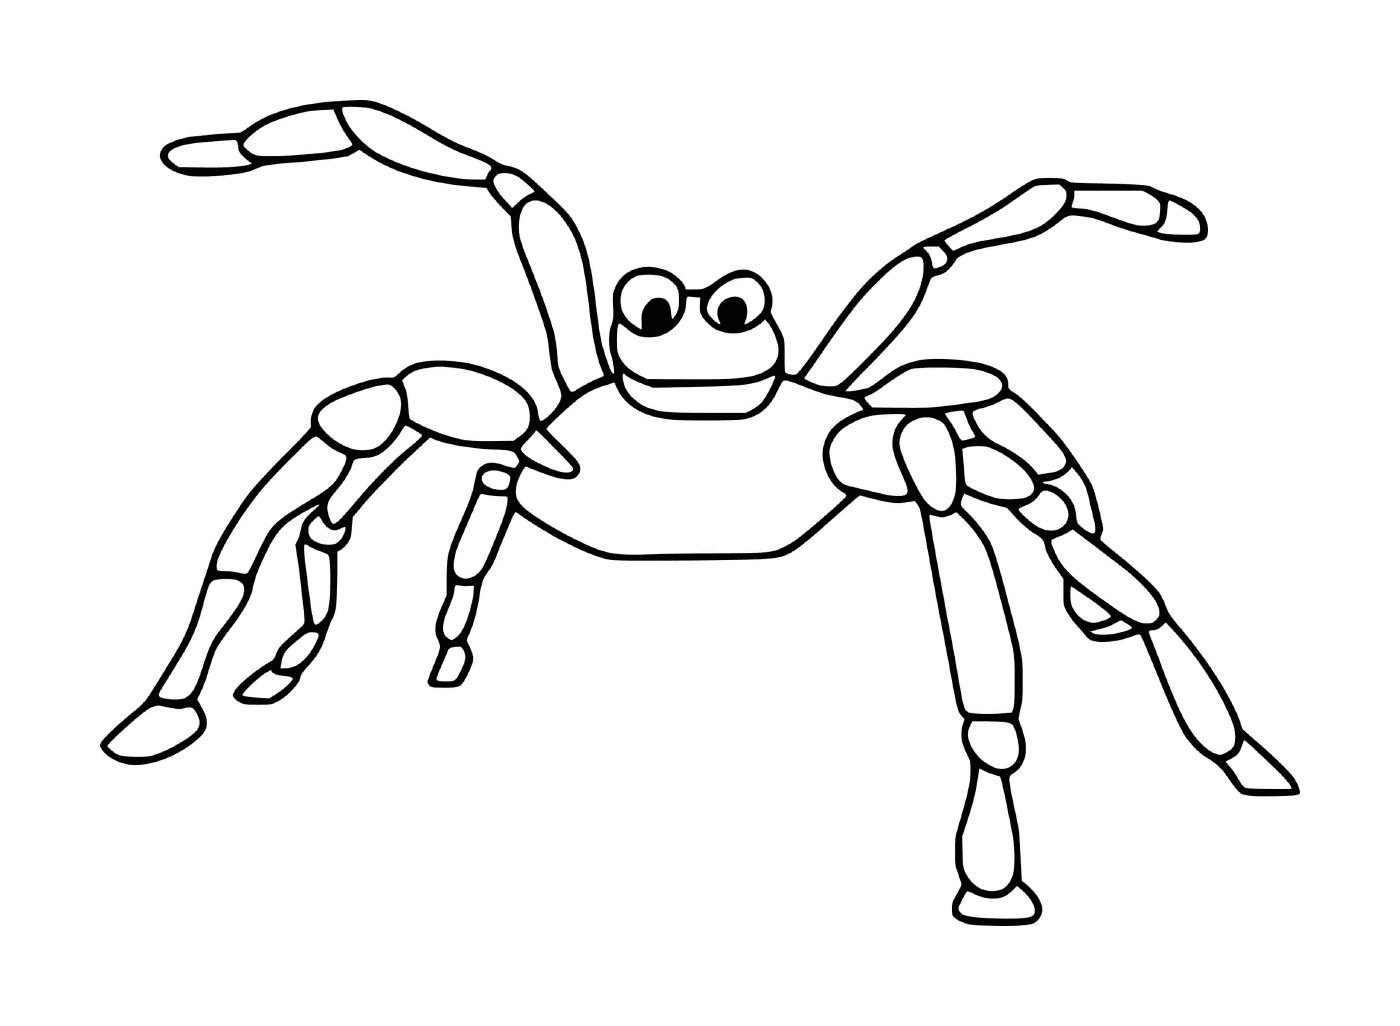  Страшный паук 